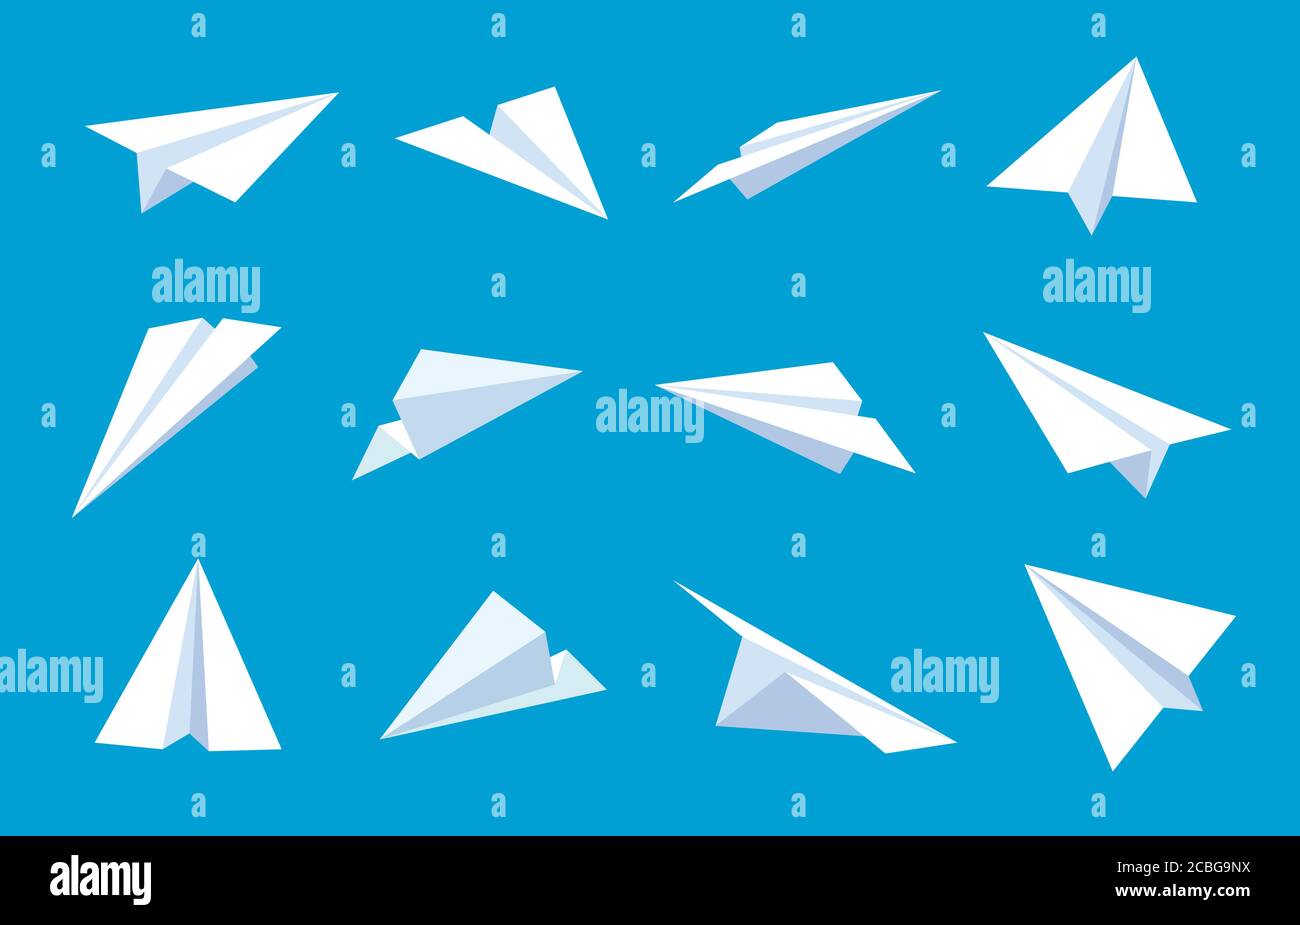 Papierebene. Fliegende Flugzeuge in blauem Himmel, weiße Papierflugzeuge aus verschiedenen Winkeln und Richtungen, Nachricht oder Reisen flache Vektor-Symbole Stock Vektor